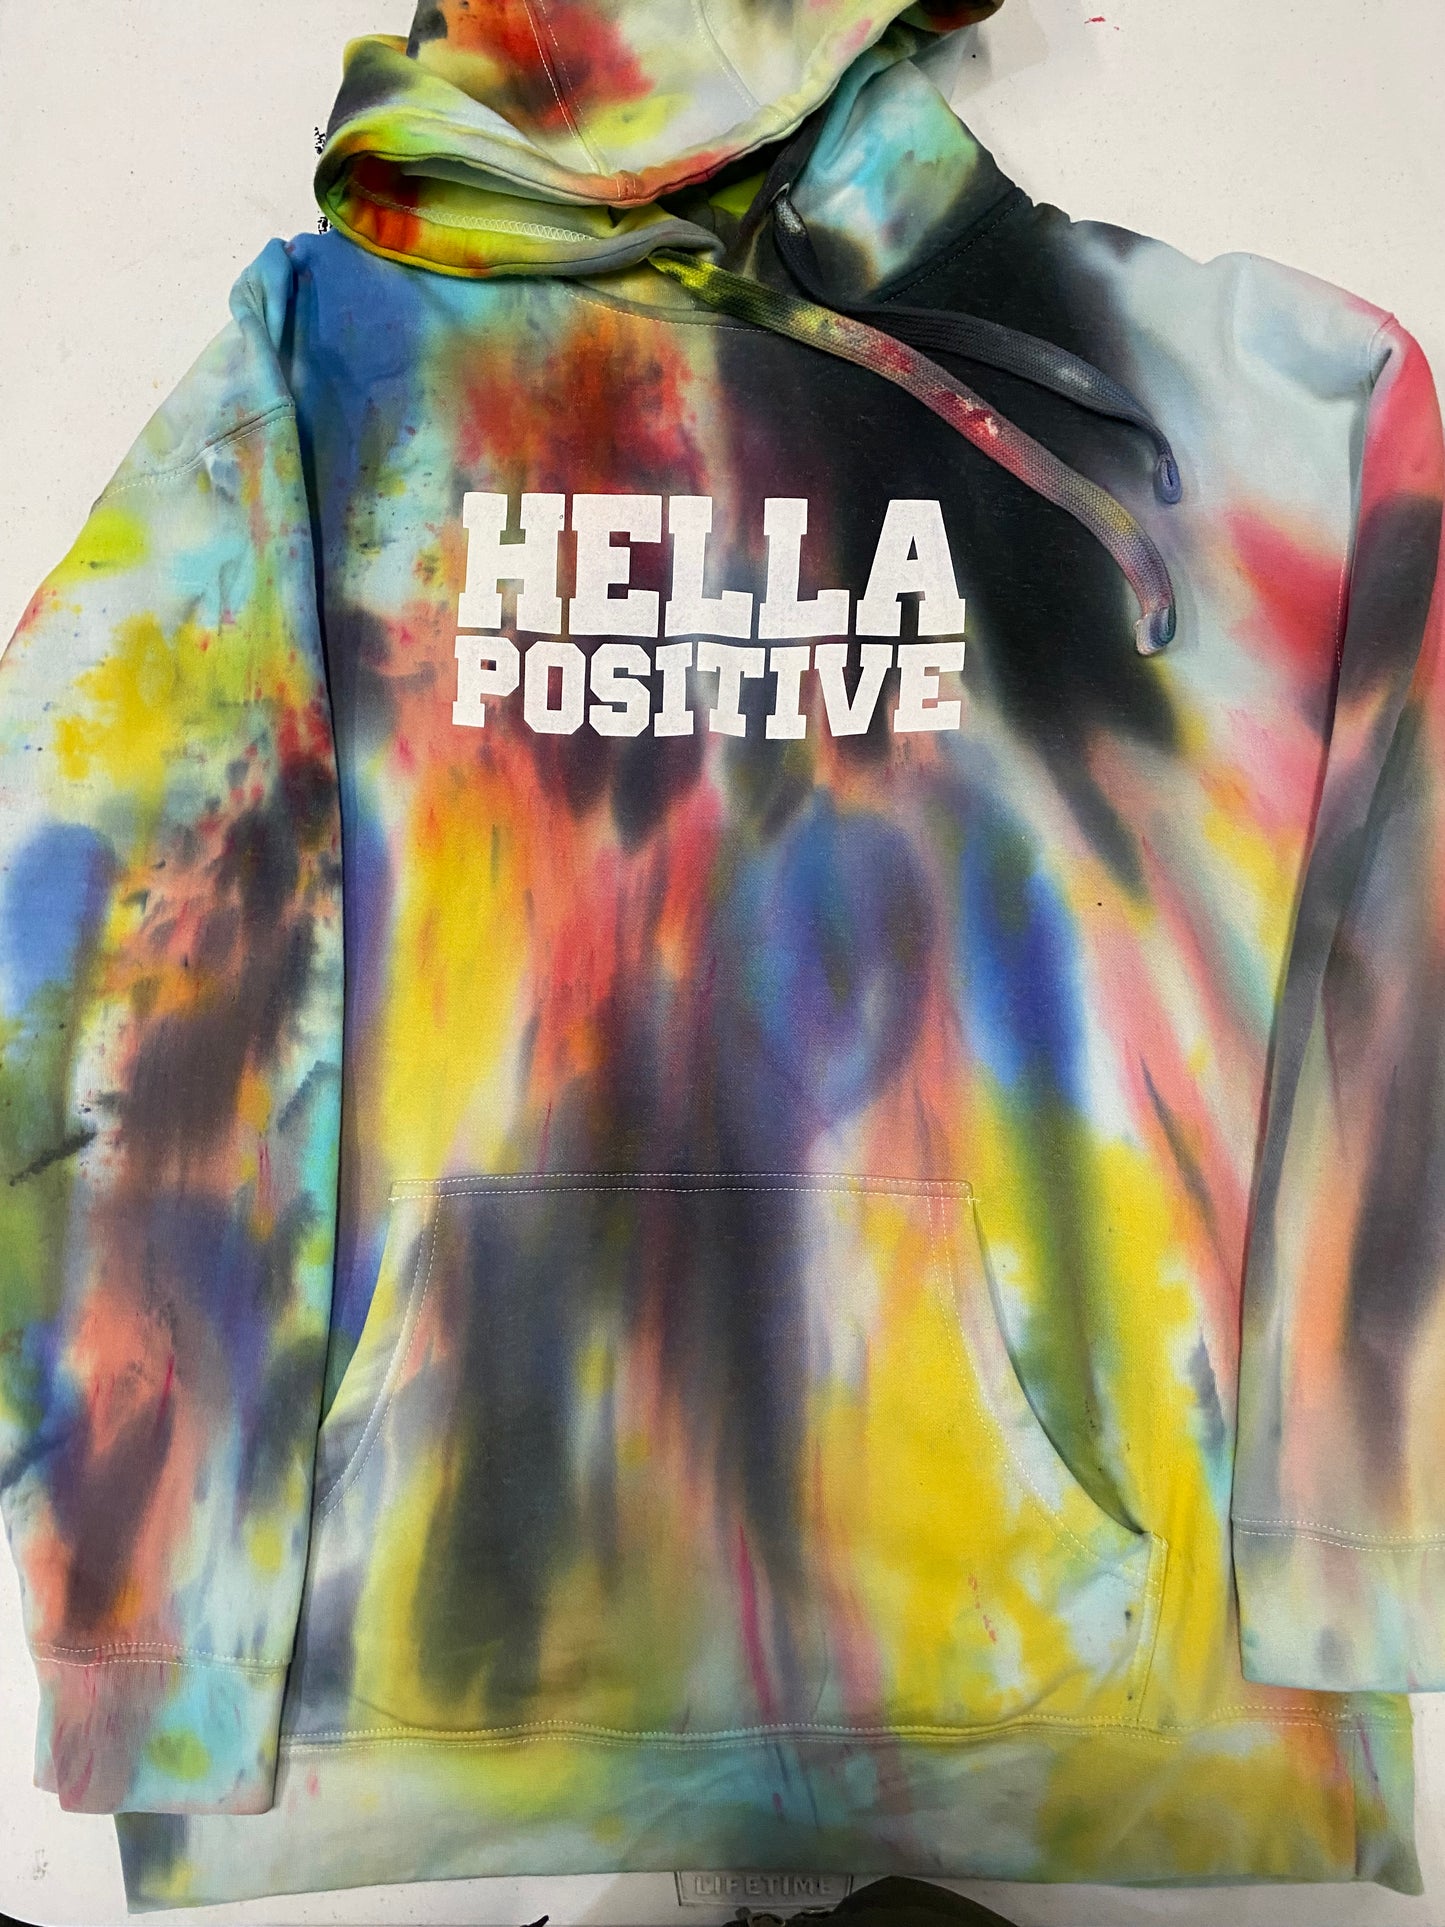 Hella Positive Tie Dye Hoodie - 2XL